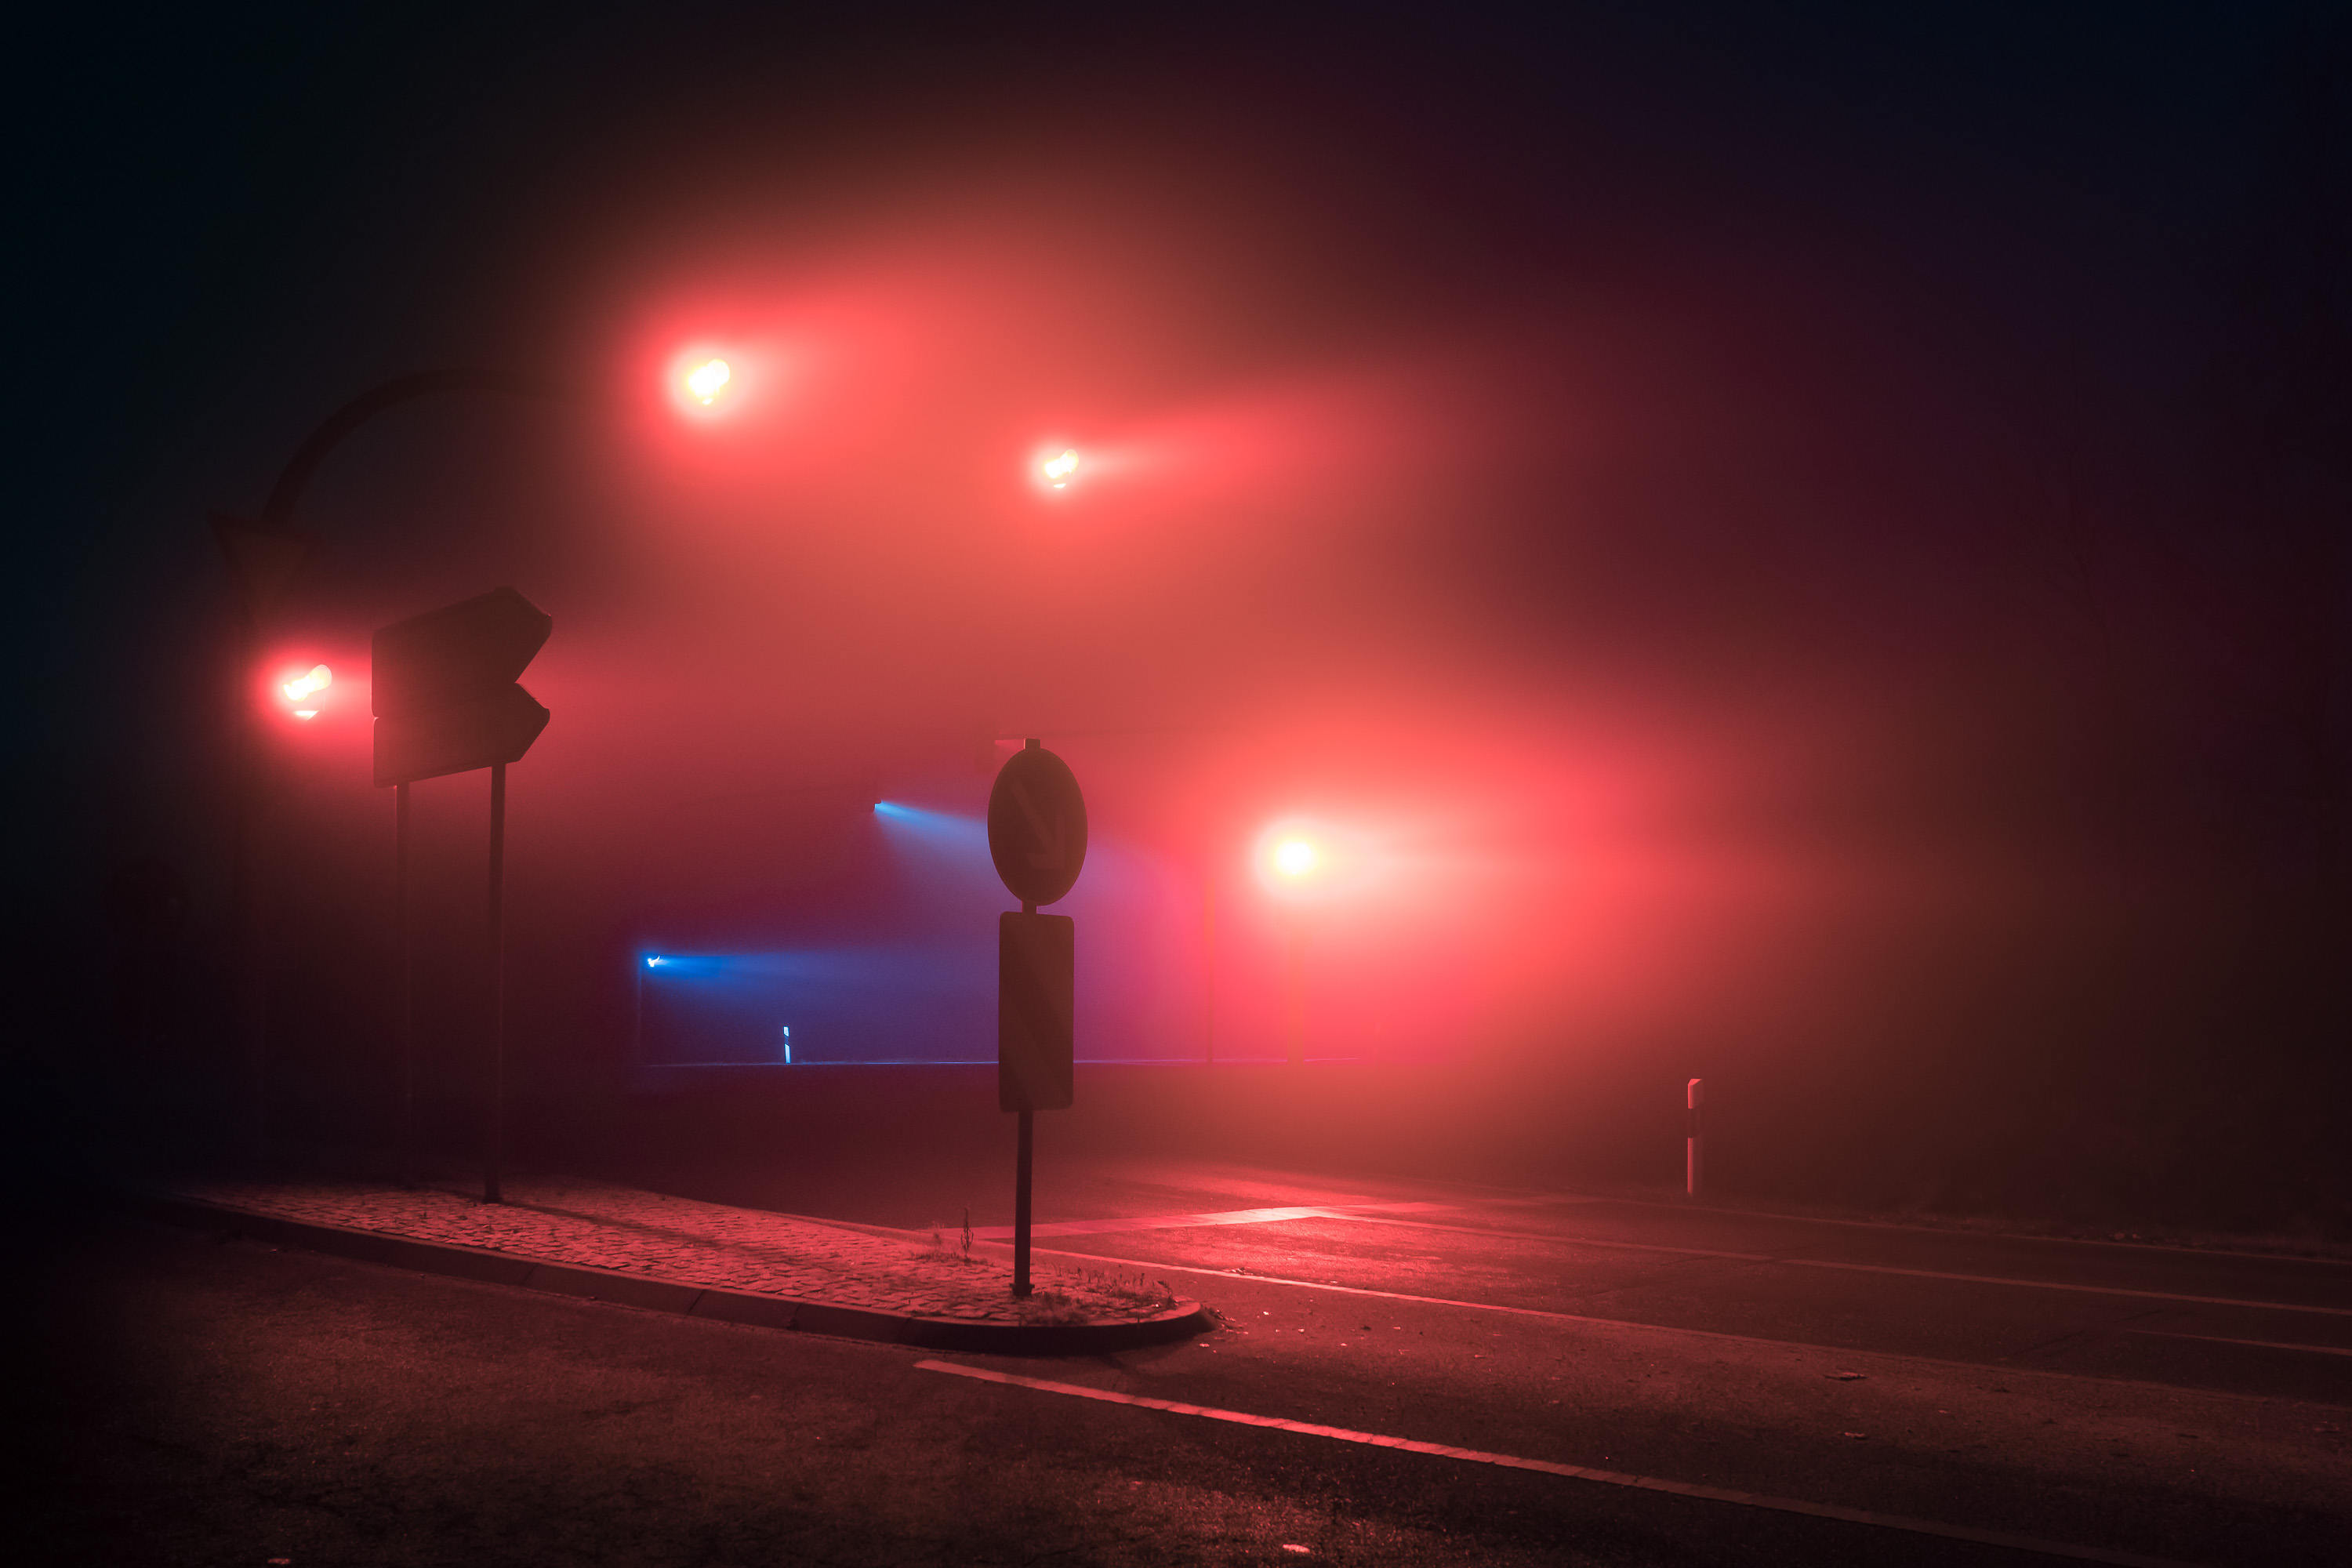 traffic-lights-3000x2000-night-mist-fog-hd-9217